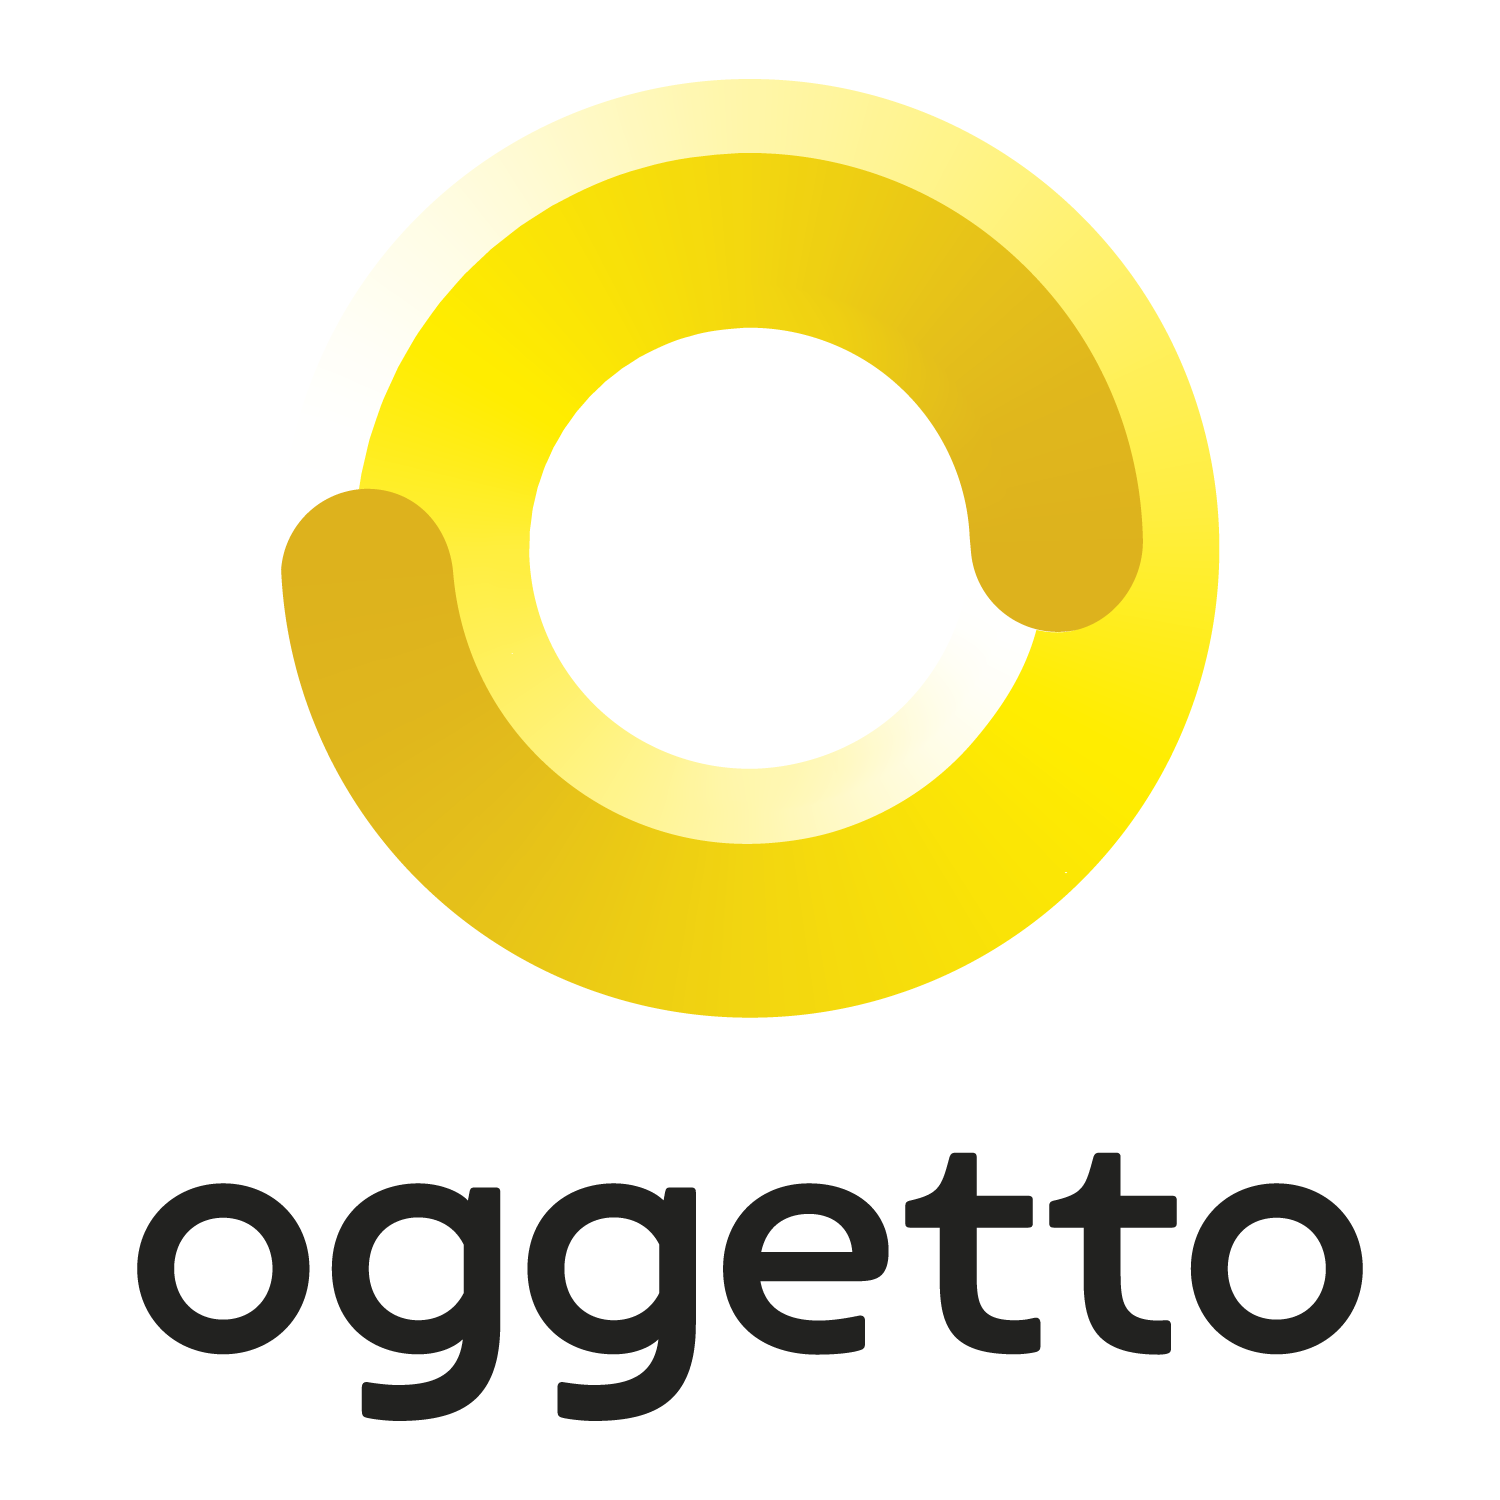 oggetto logo